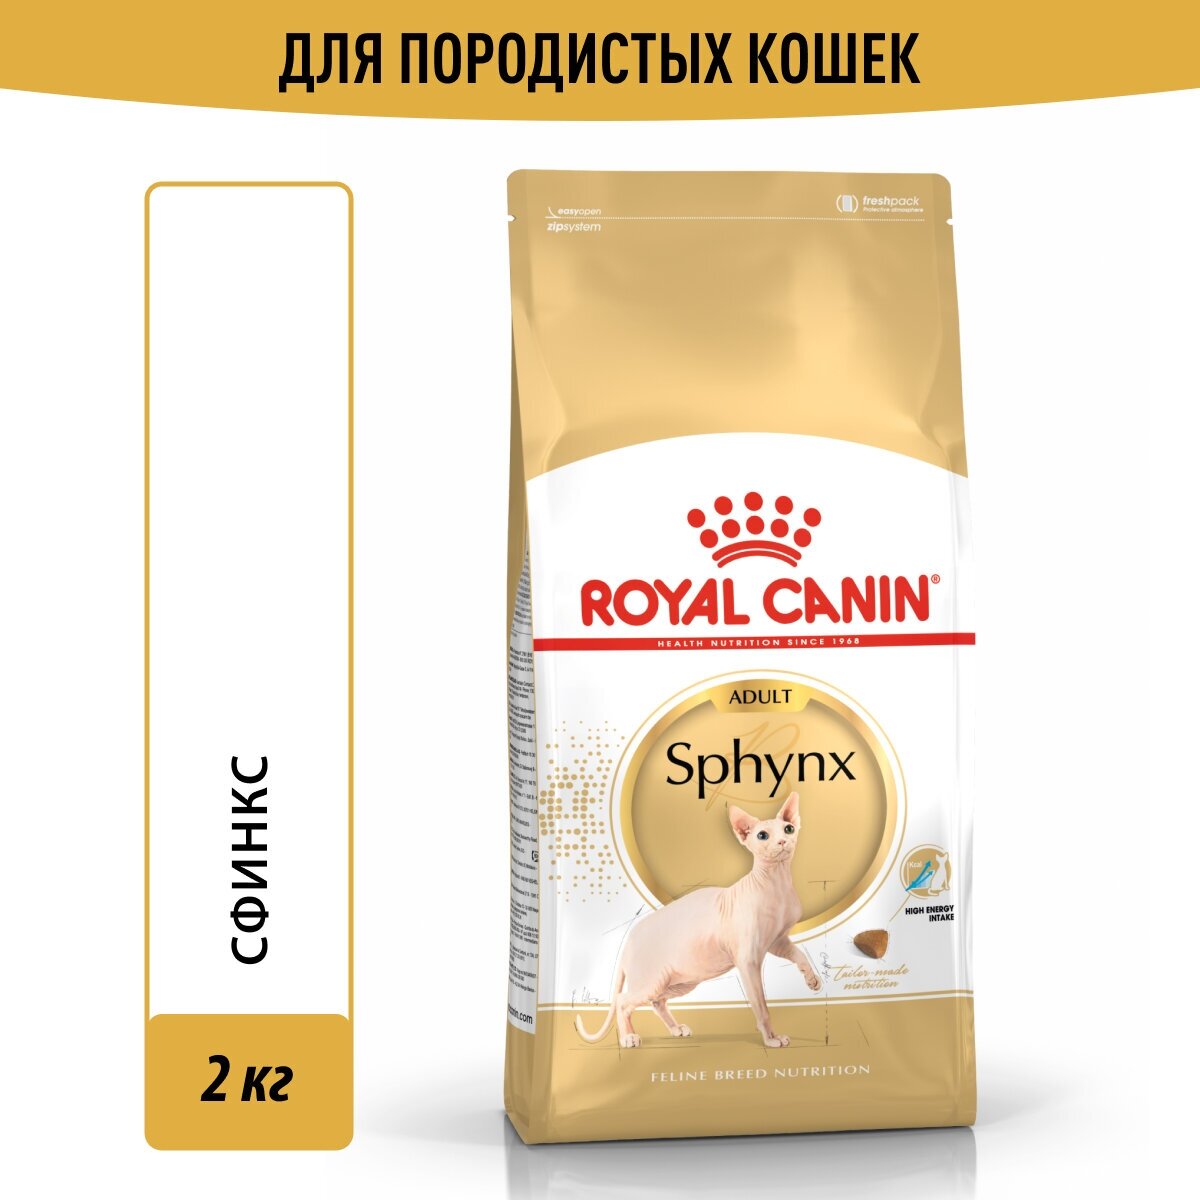 Royal Canin Sphynx специальное питание для кошек породы сфинкс в возрасте от 1 года до 10 лет 2 кг